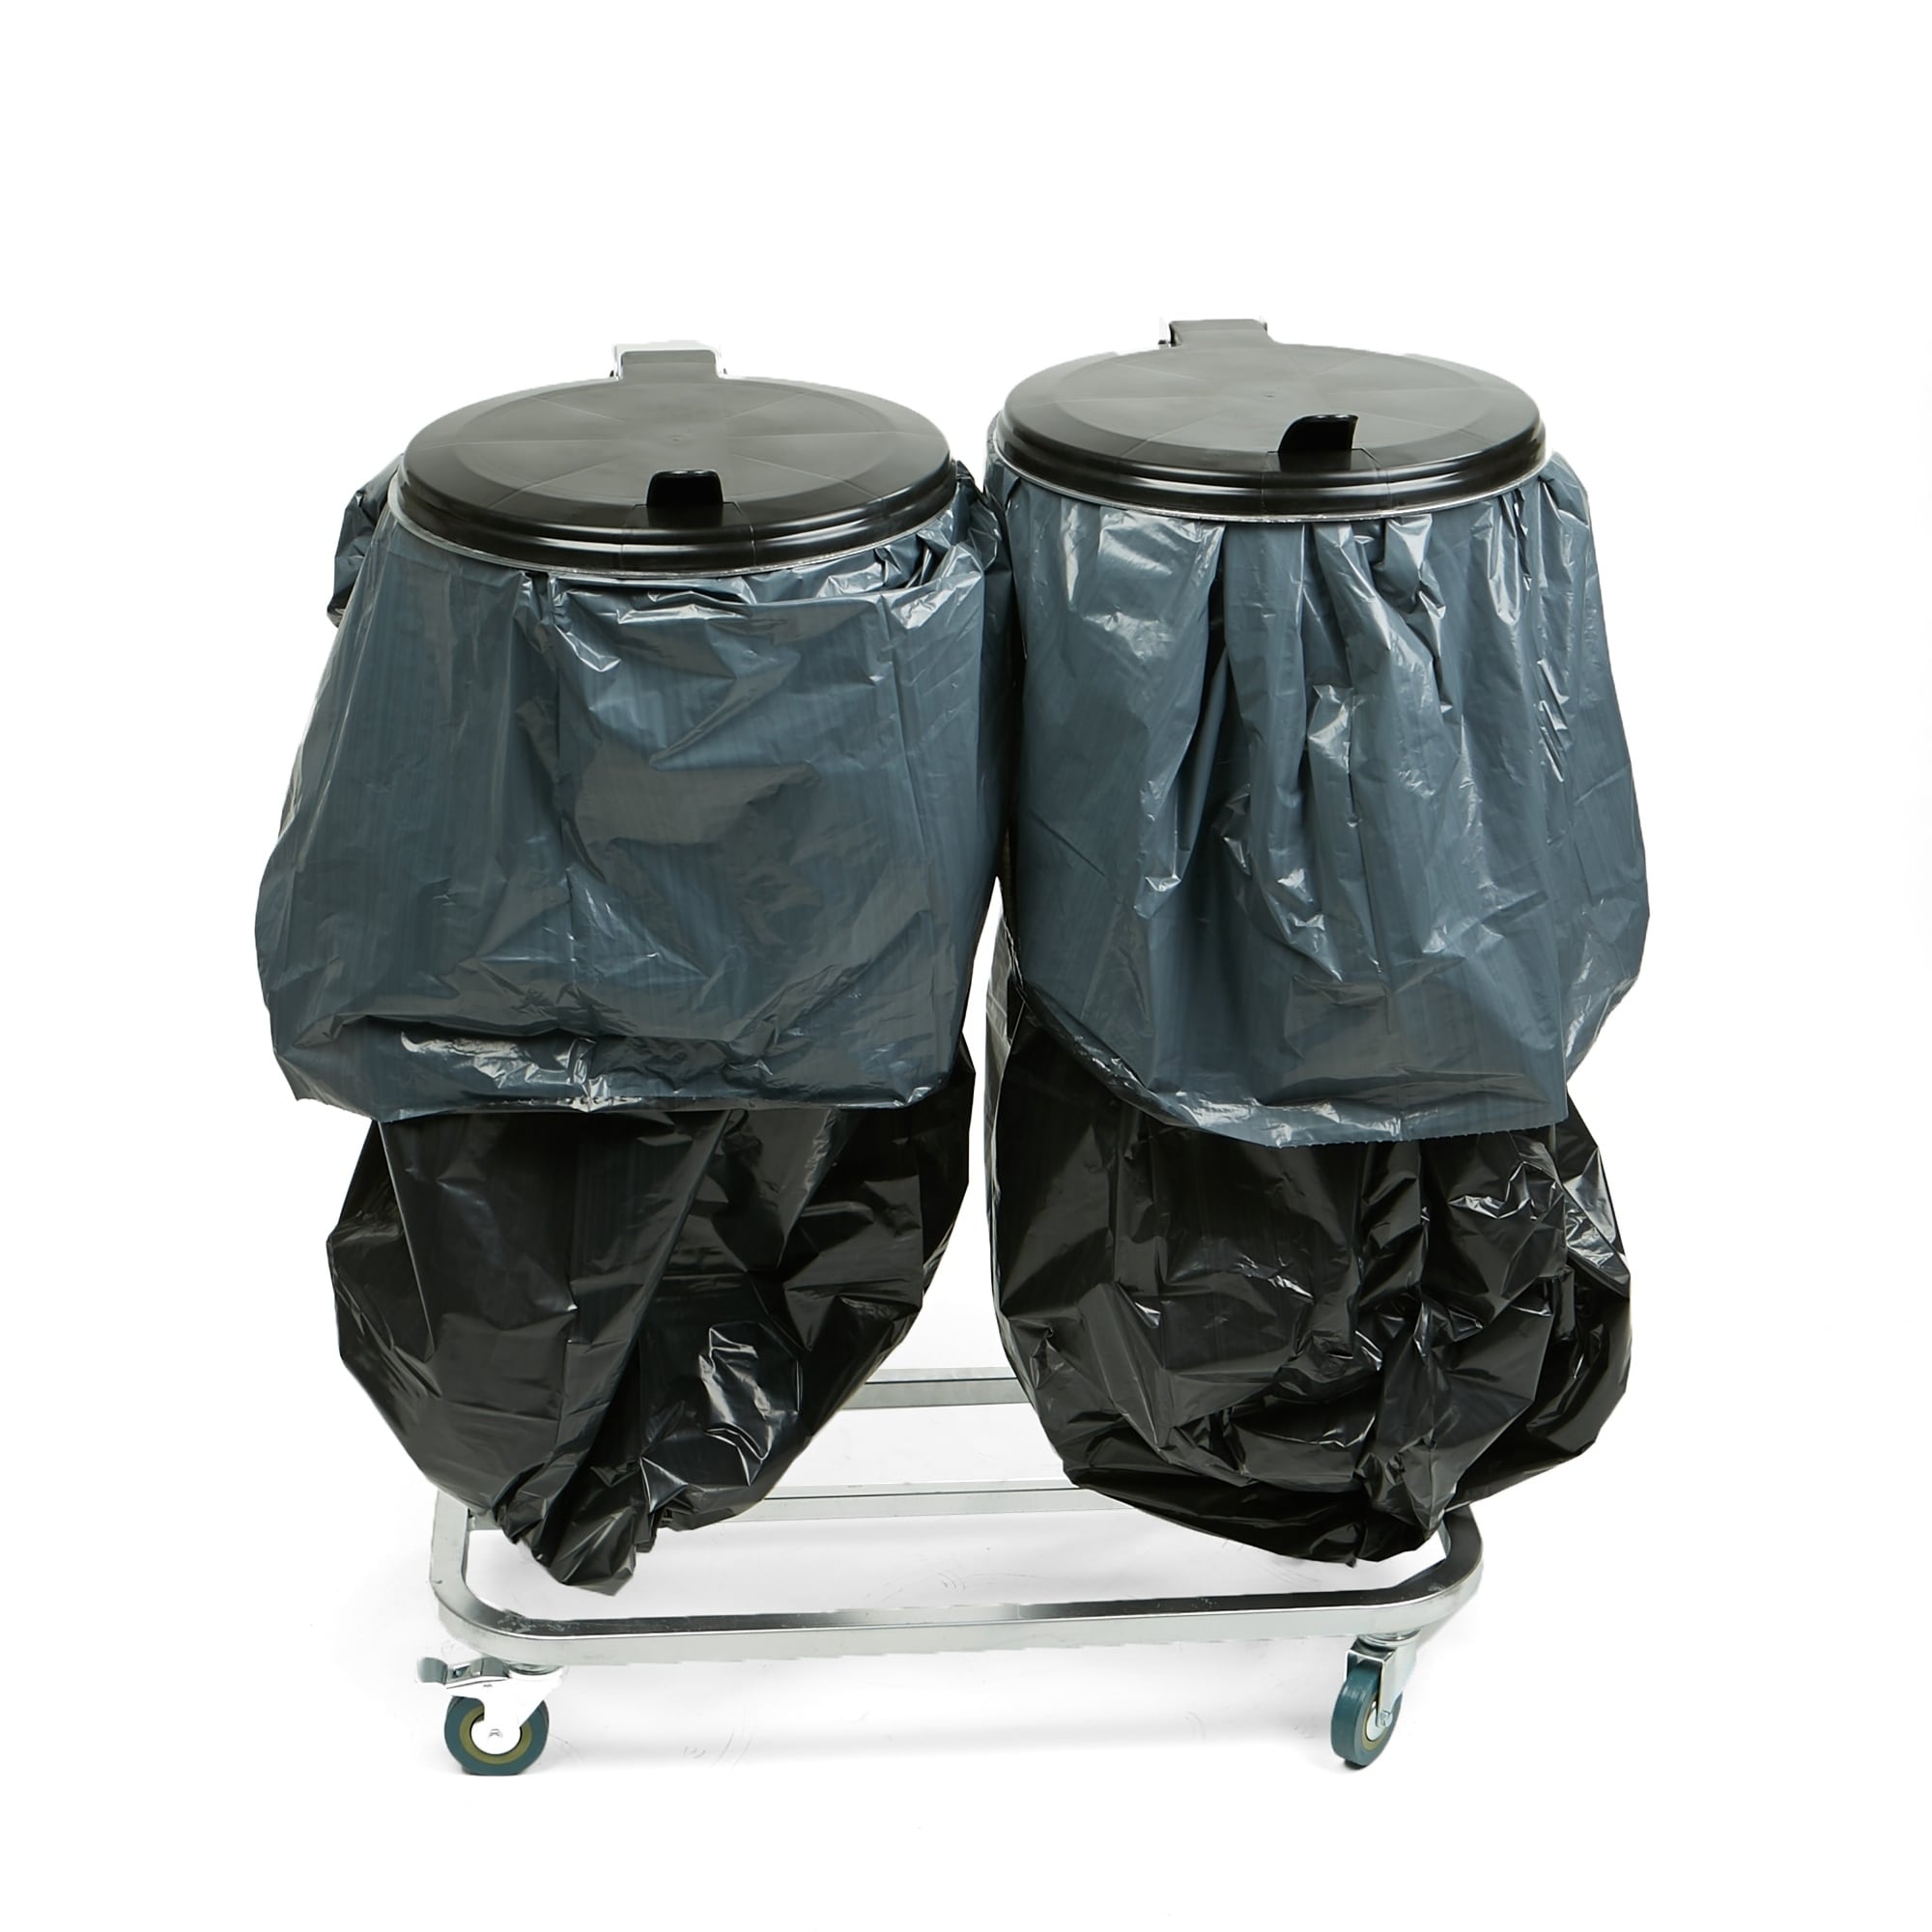 MAGNET WASTE BAG FLY TYING Vise Accessories DUST BAG Trash Waste Basket  Garbage